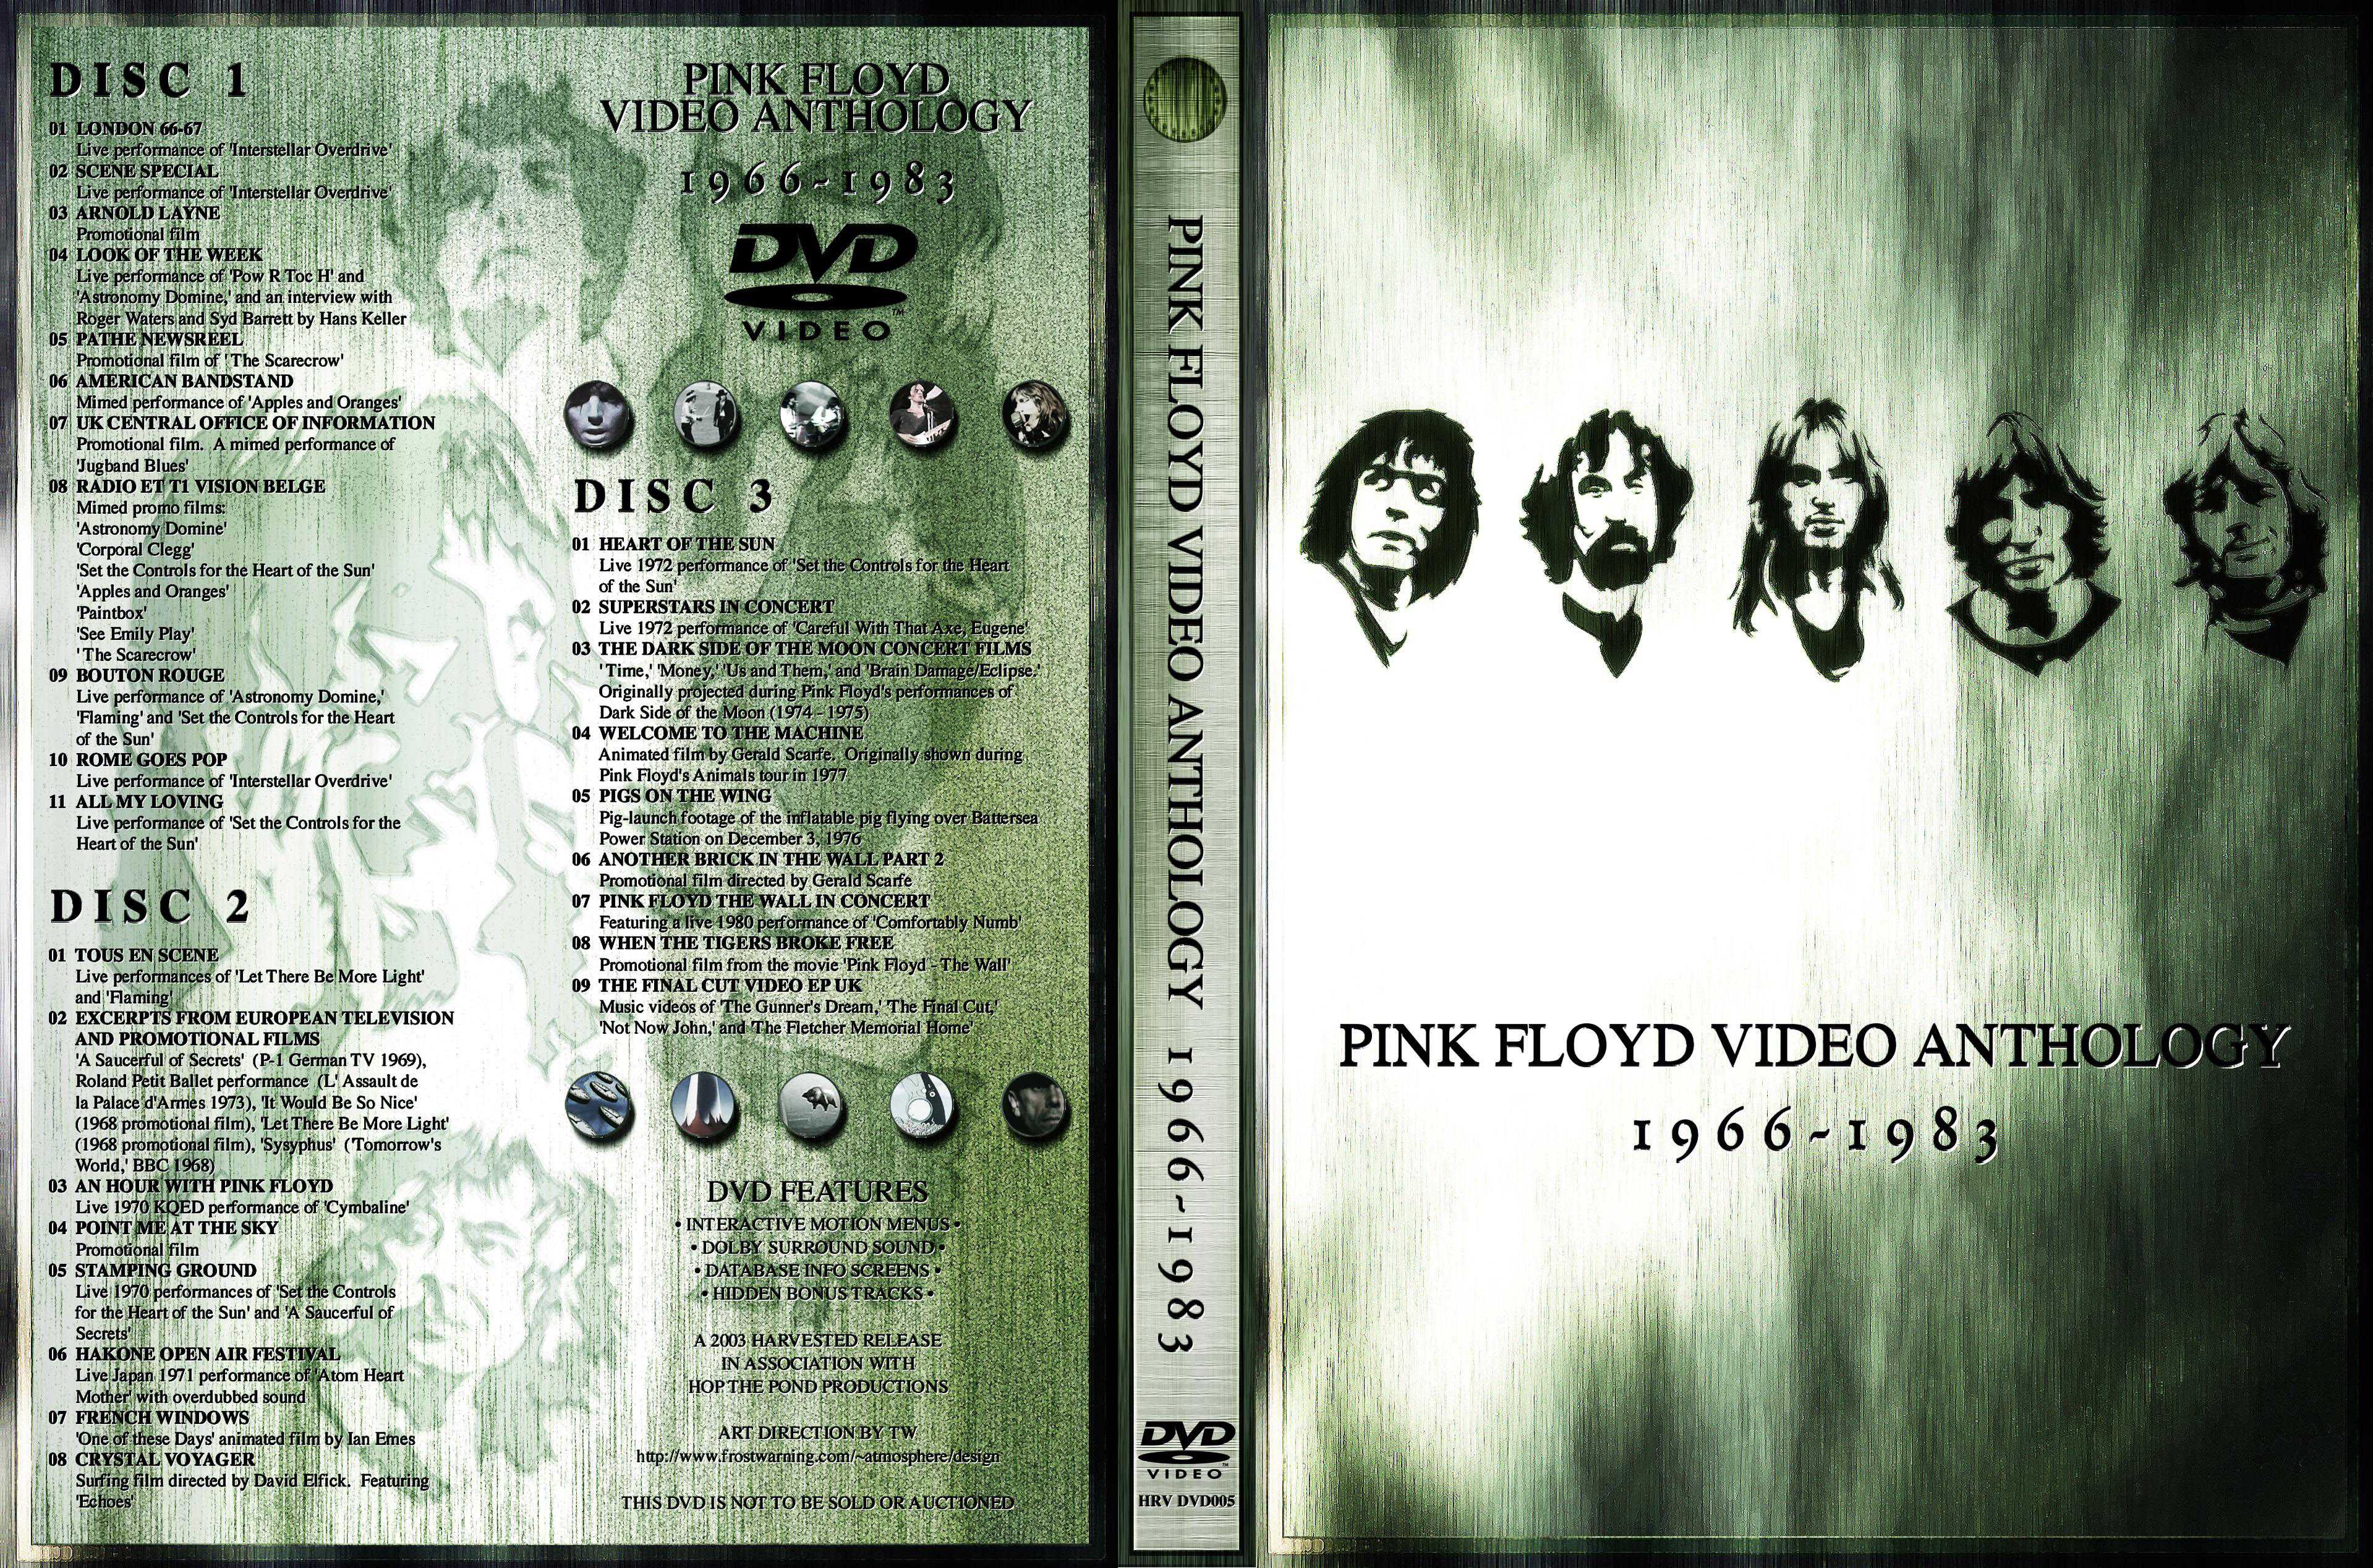 Jaquette DVD Pink Floyd video anthologie 1966-1983